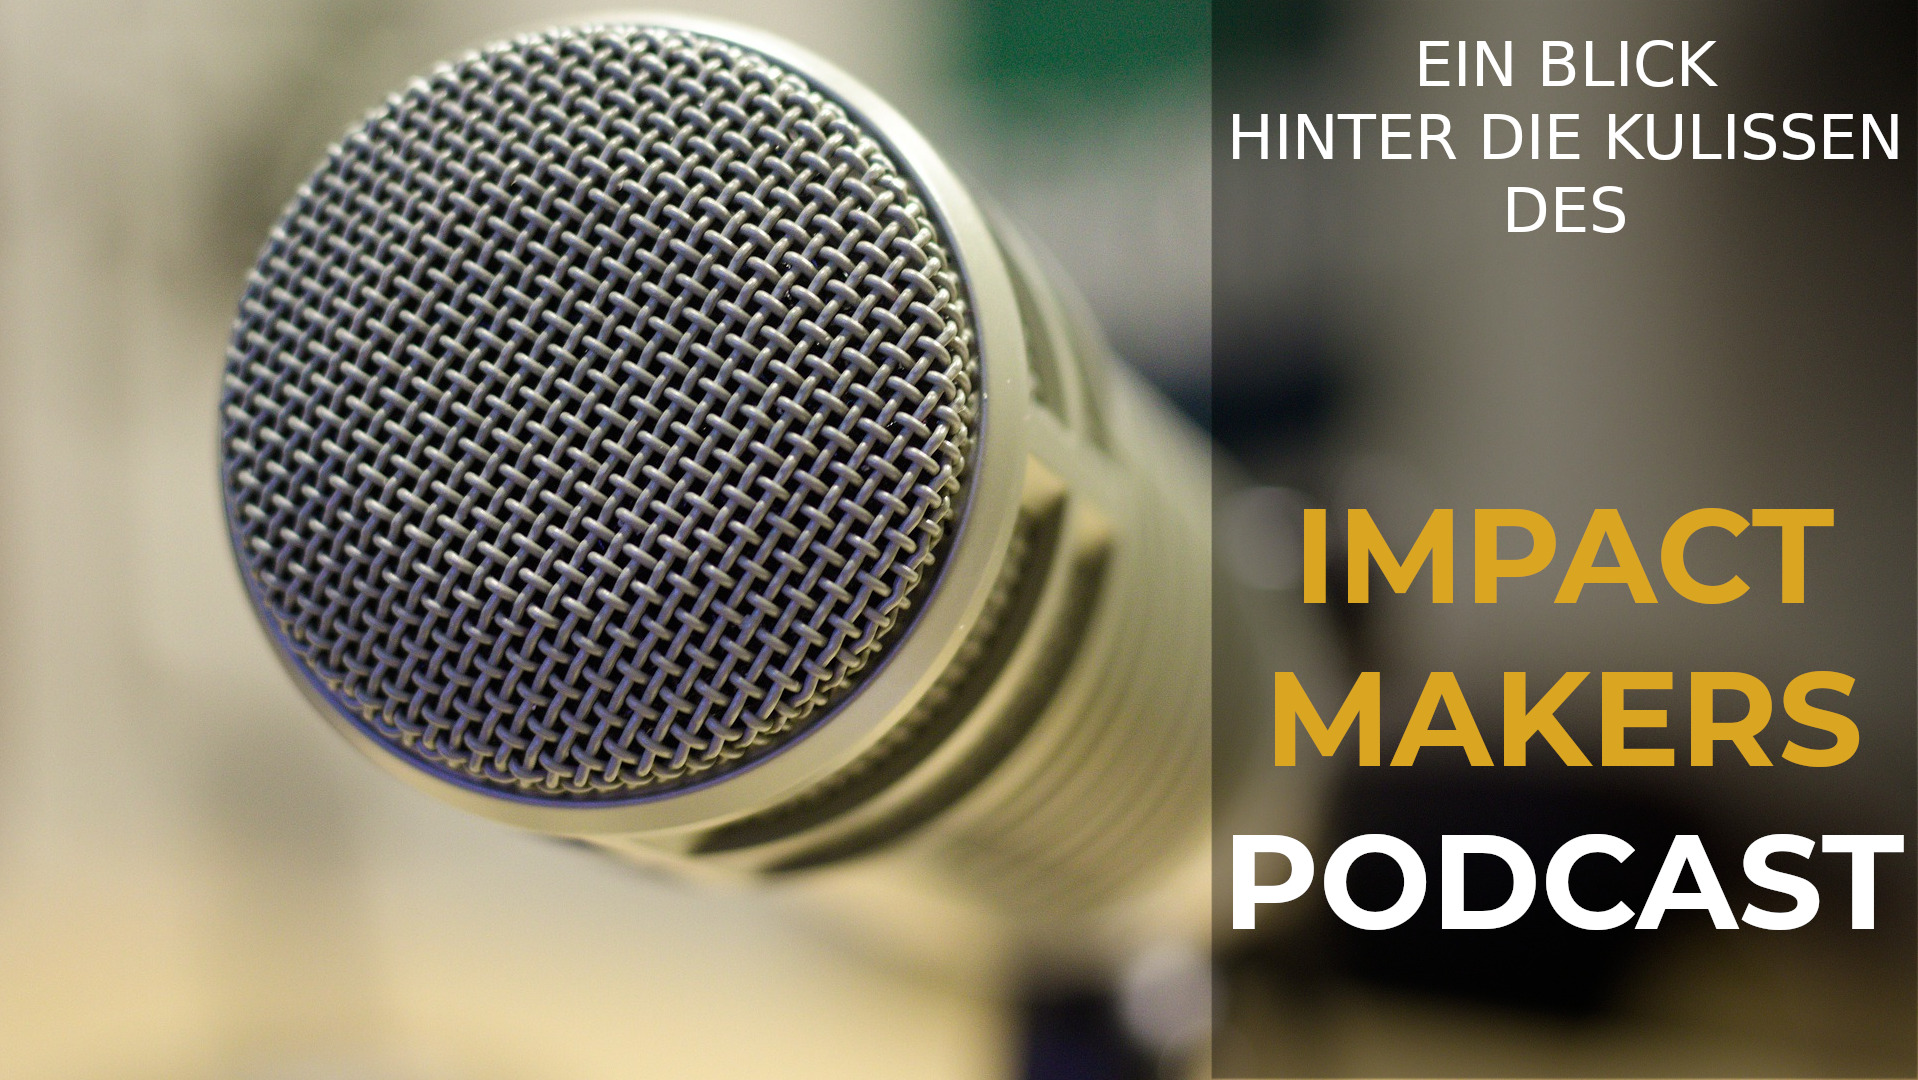 Ein Blick hinter die Kulissen des Impact Makers Podcast